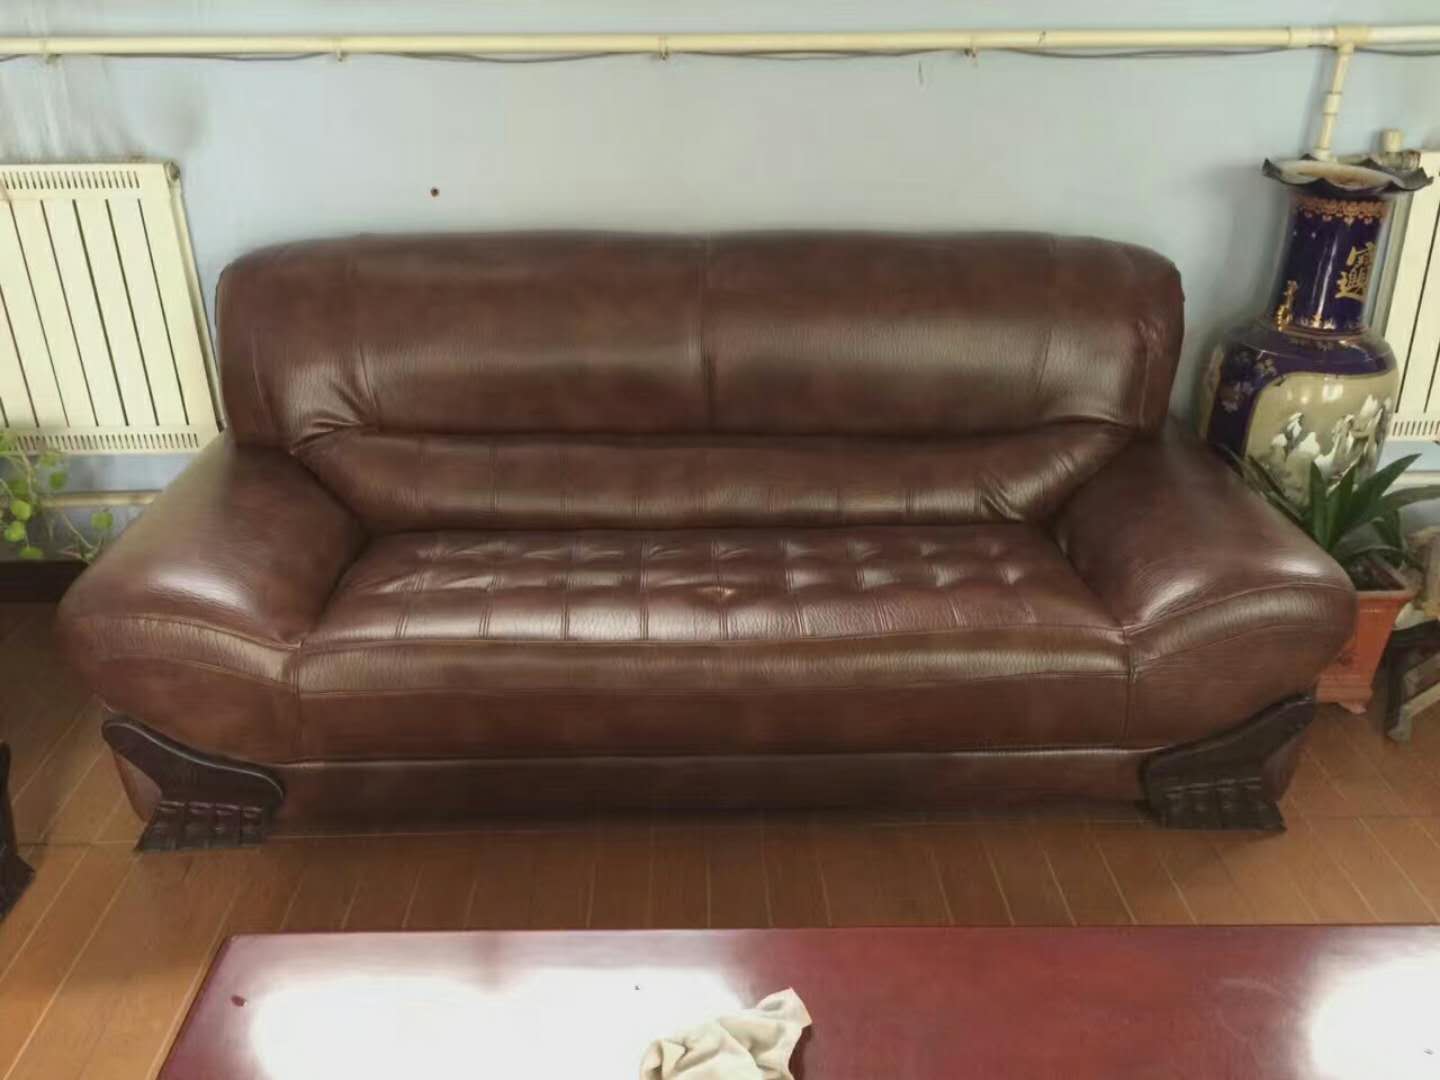 旧沙发翻新价格一般是多少